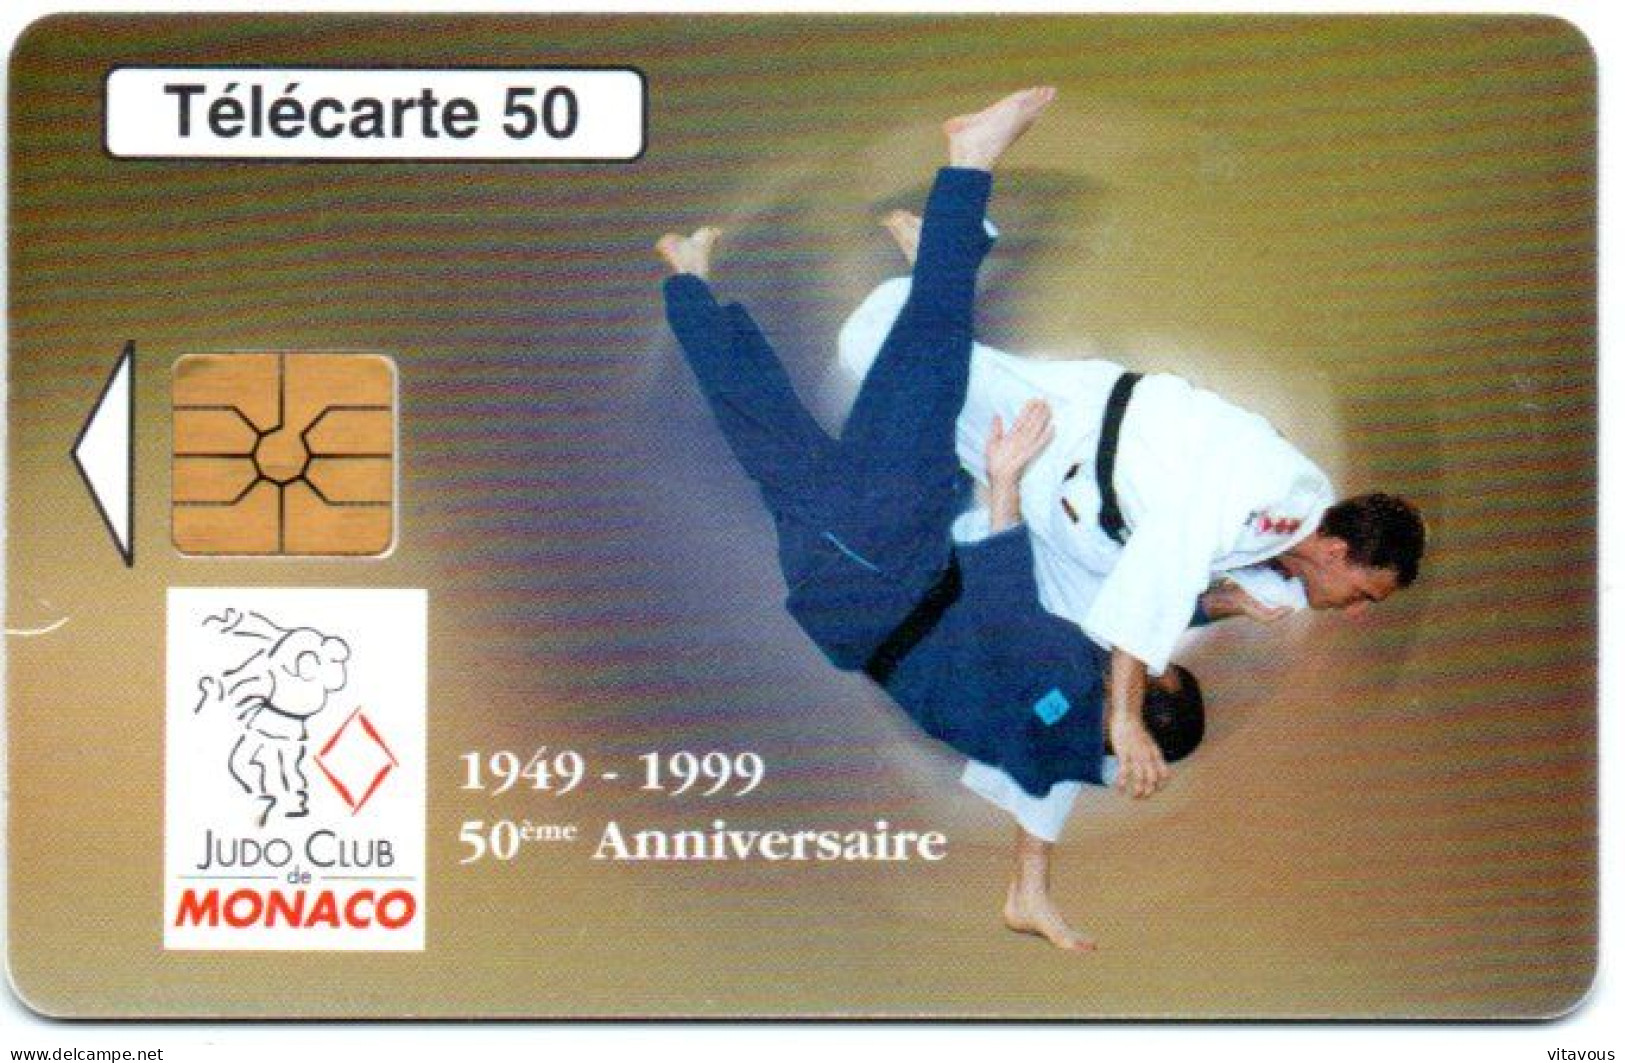 MF 49 - JUDO CLUB MONACO  Télécarte Puce MONACO Phonecard ( R 870) - Monaco